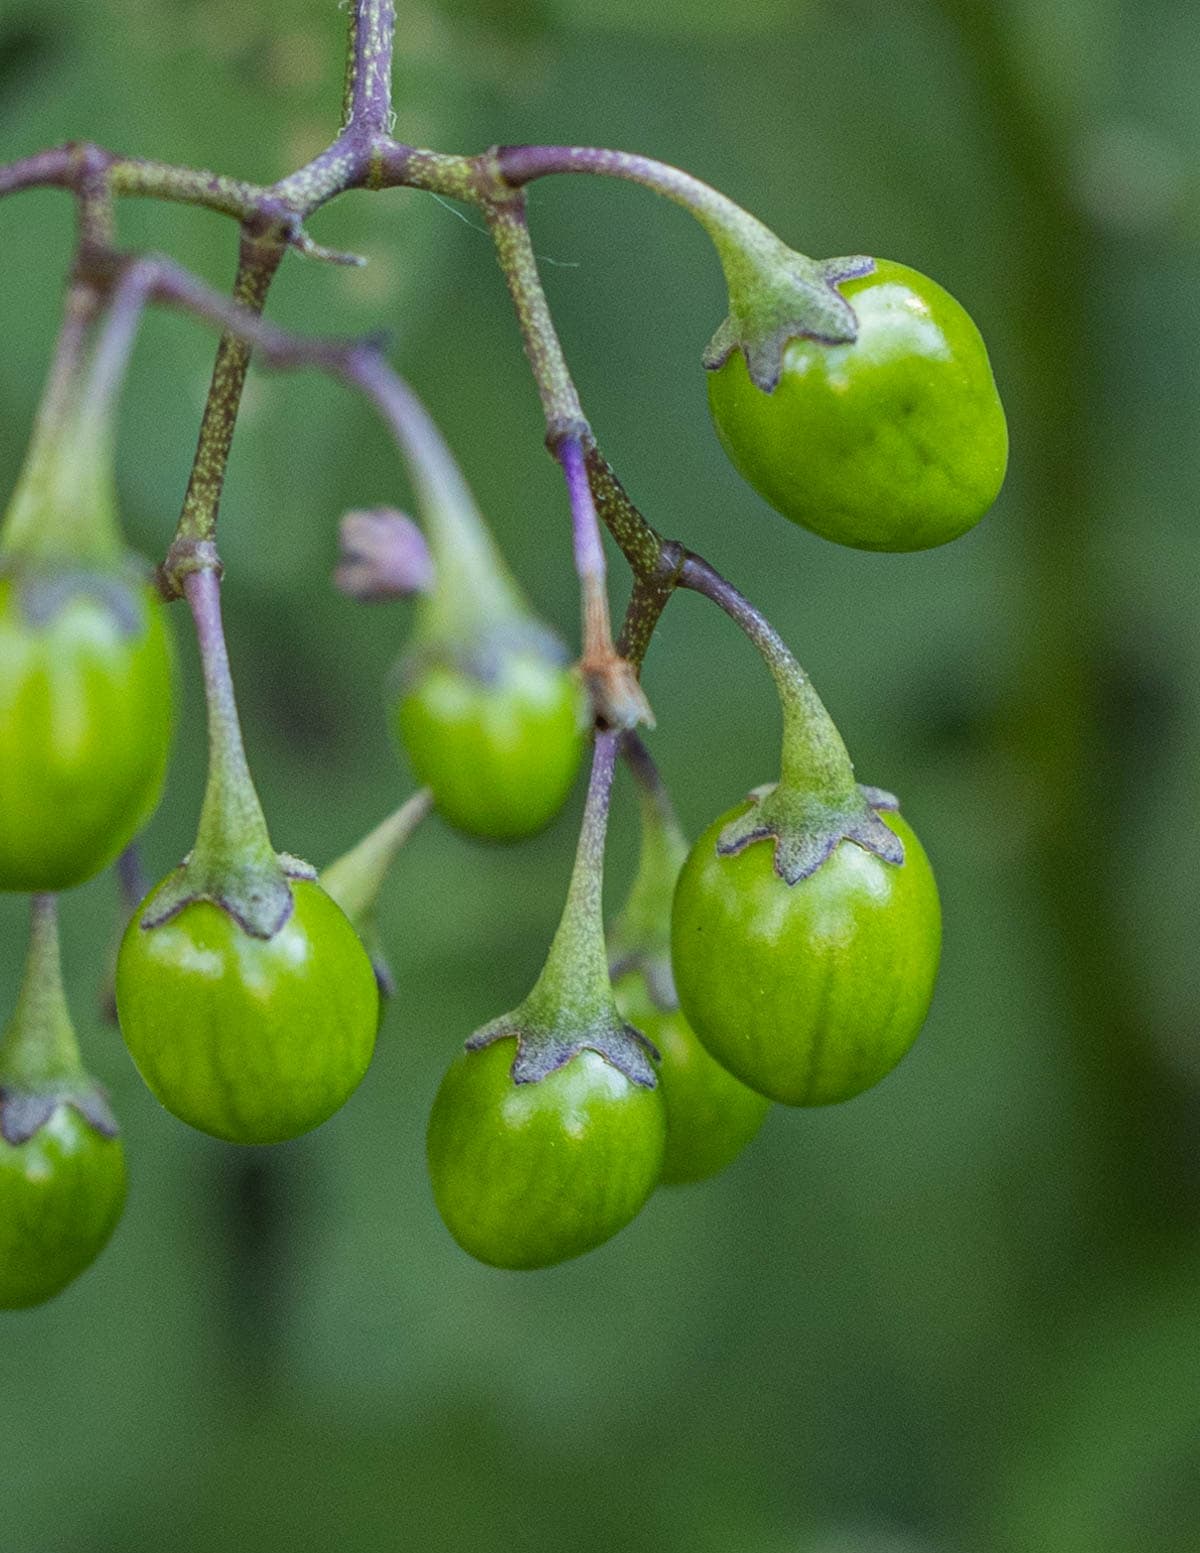 Unripe green berries or black nightshade berries (Solanum ptycanthum).